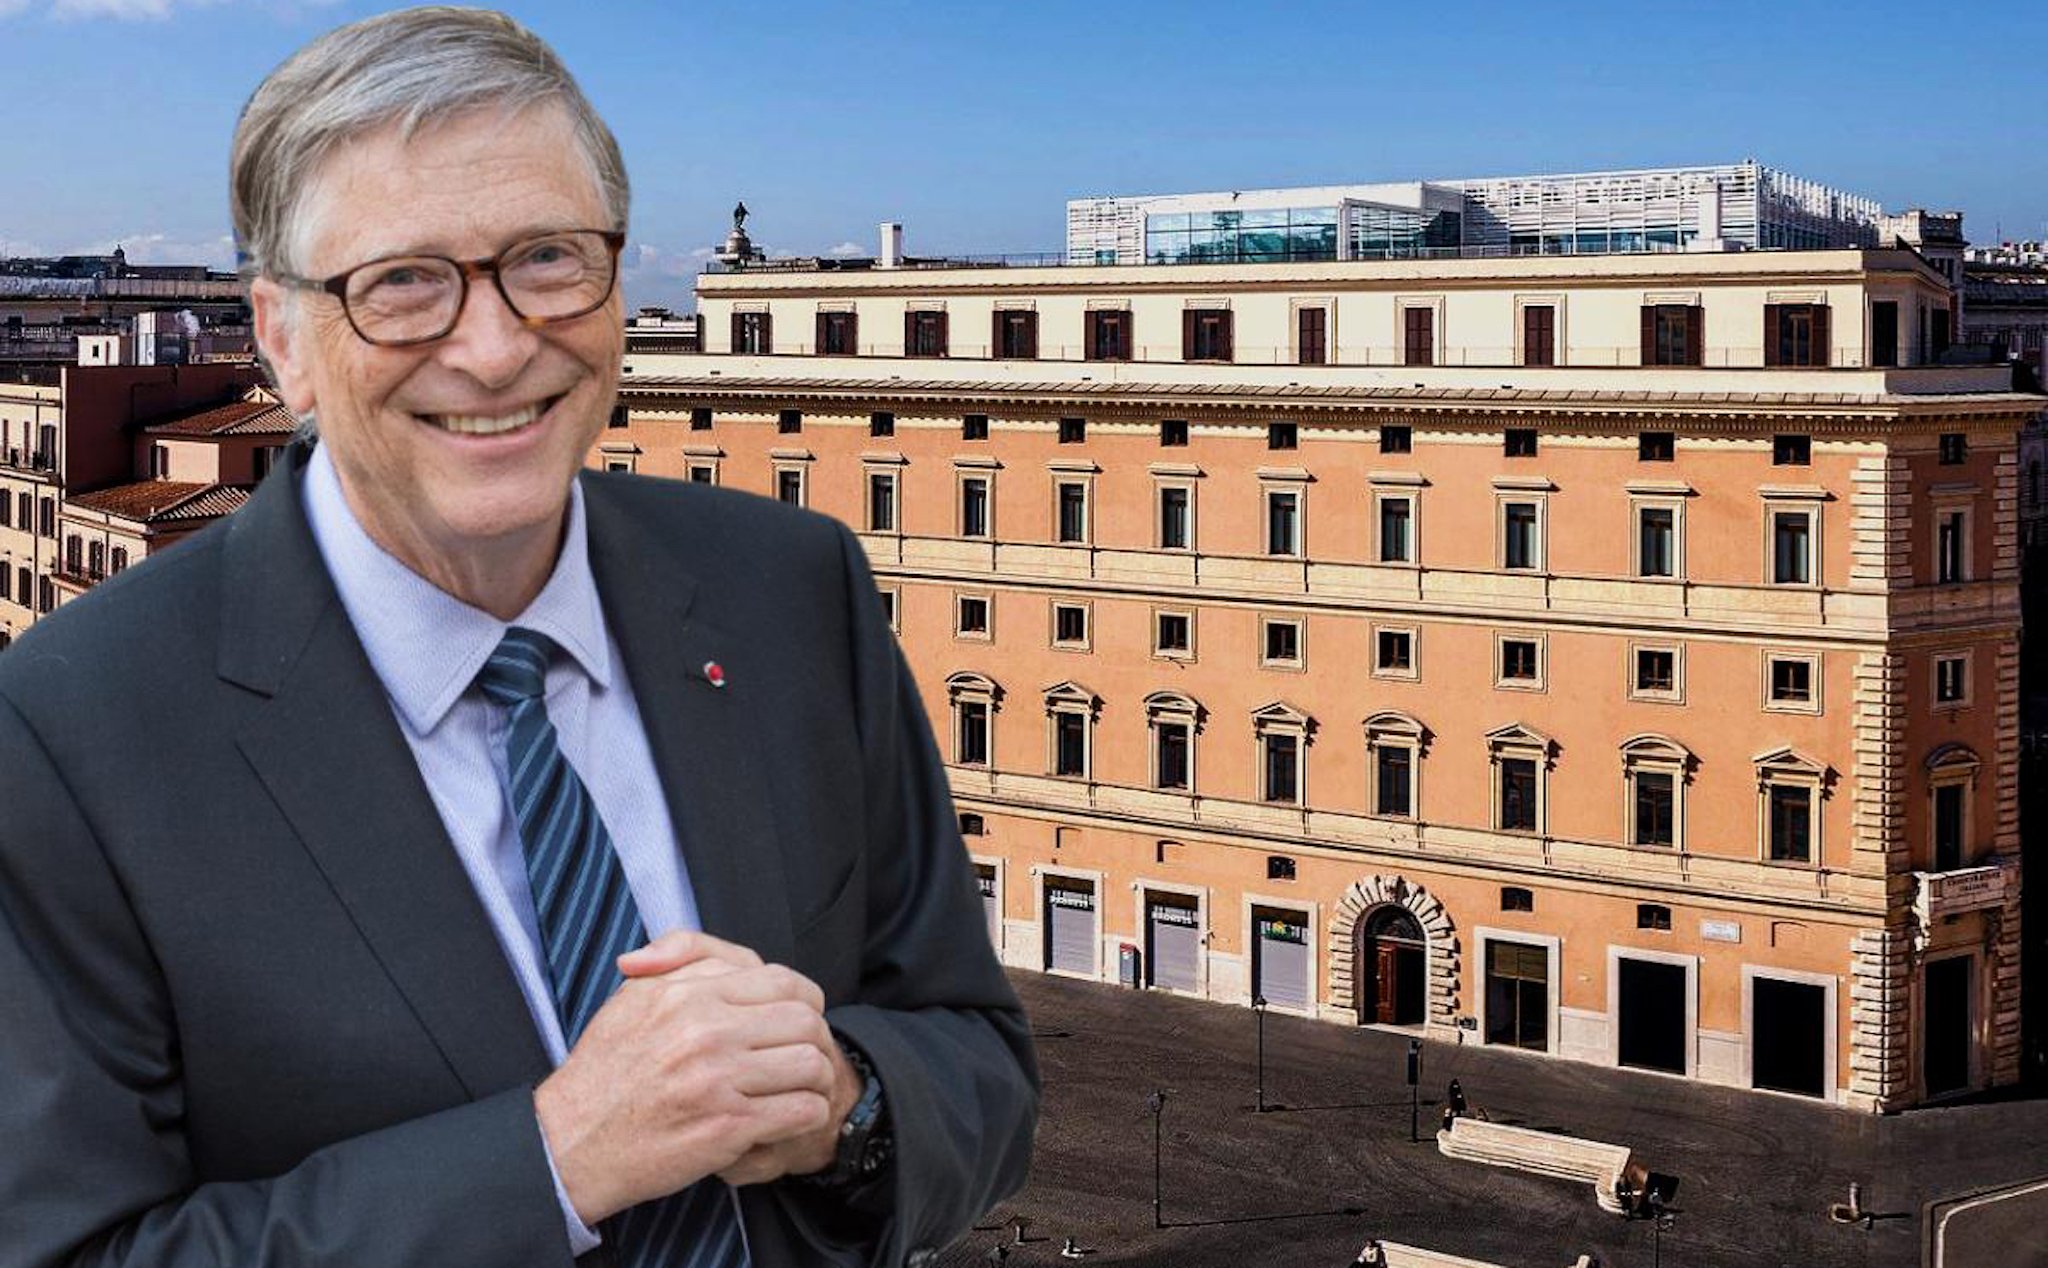 Tỷ phú Bill Gates hợp tác cùng hoàng tử Arab Saudi chuẩn bị làm khách sạn 6 sao ở Rome, Ý